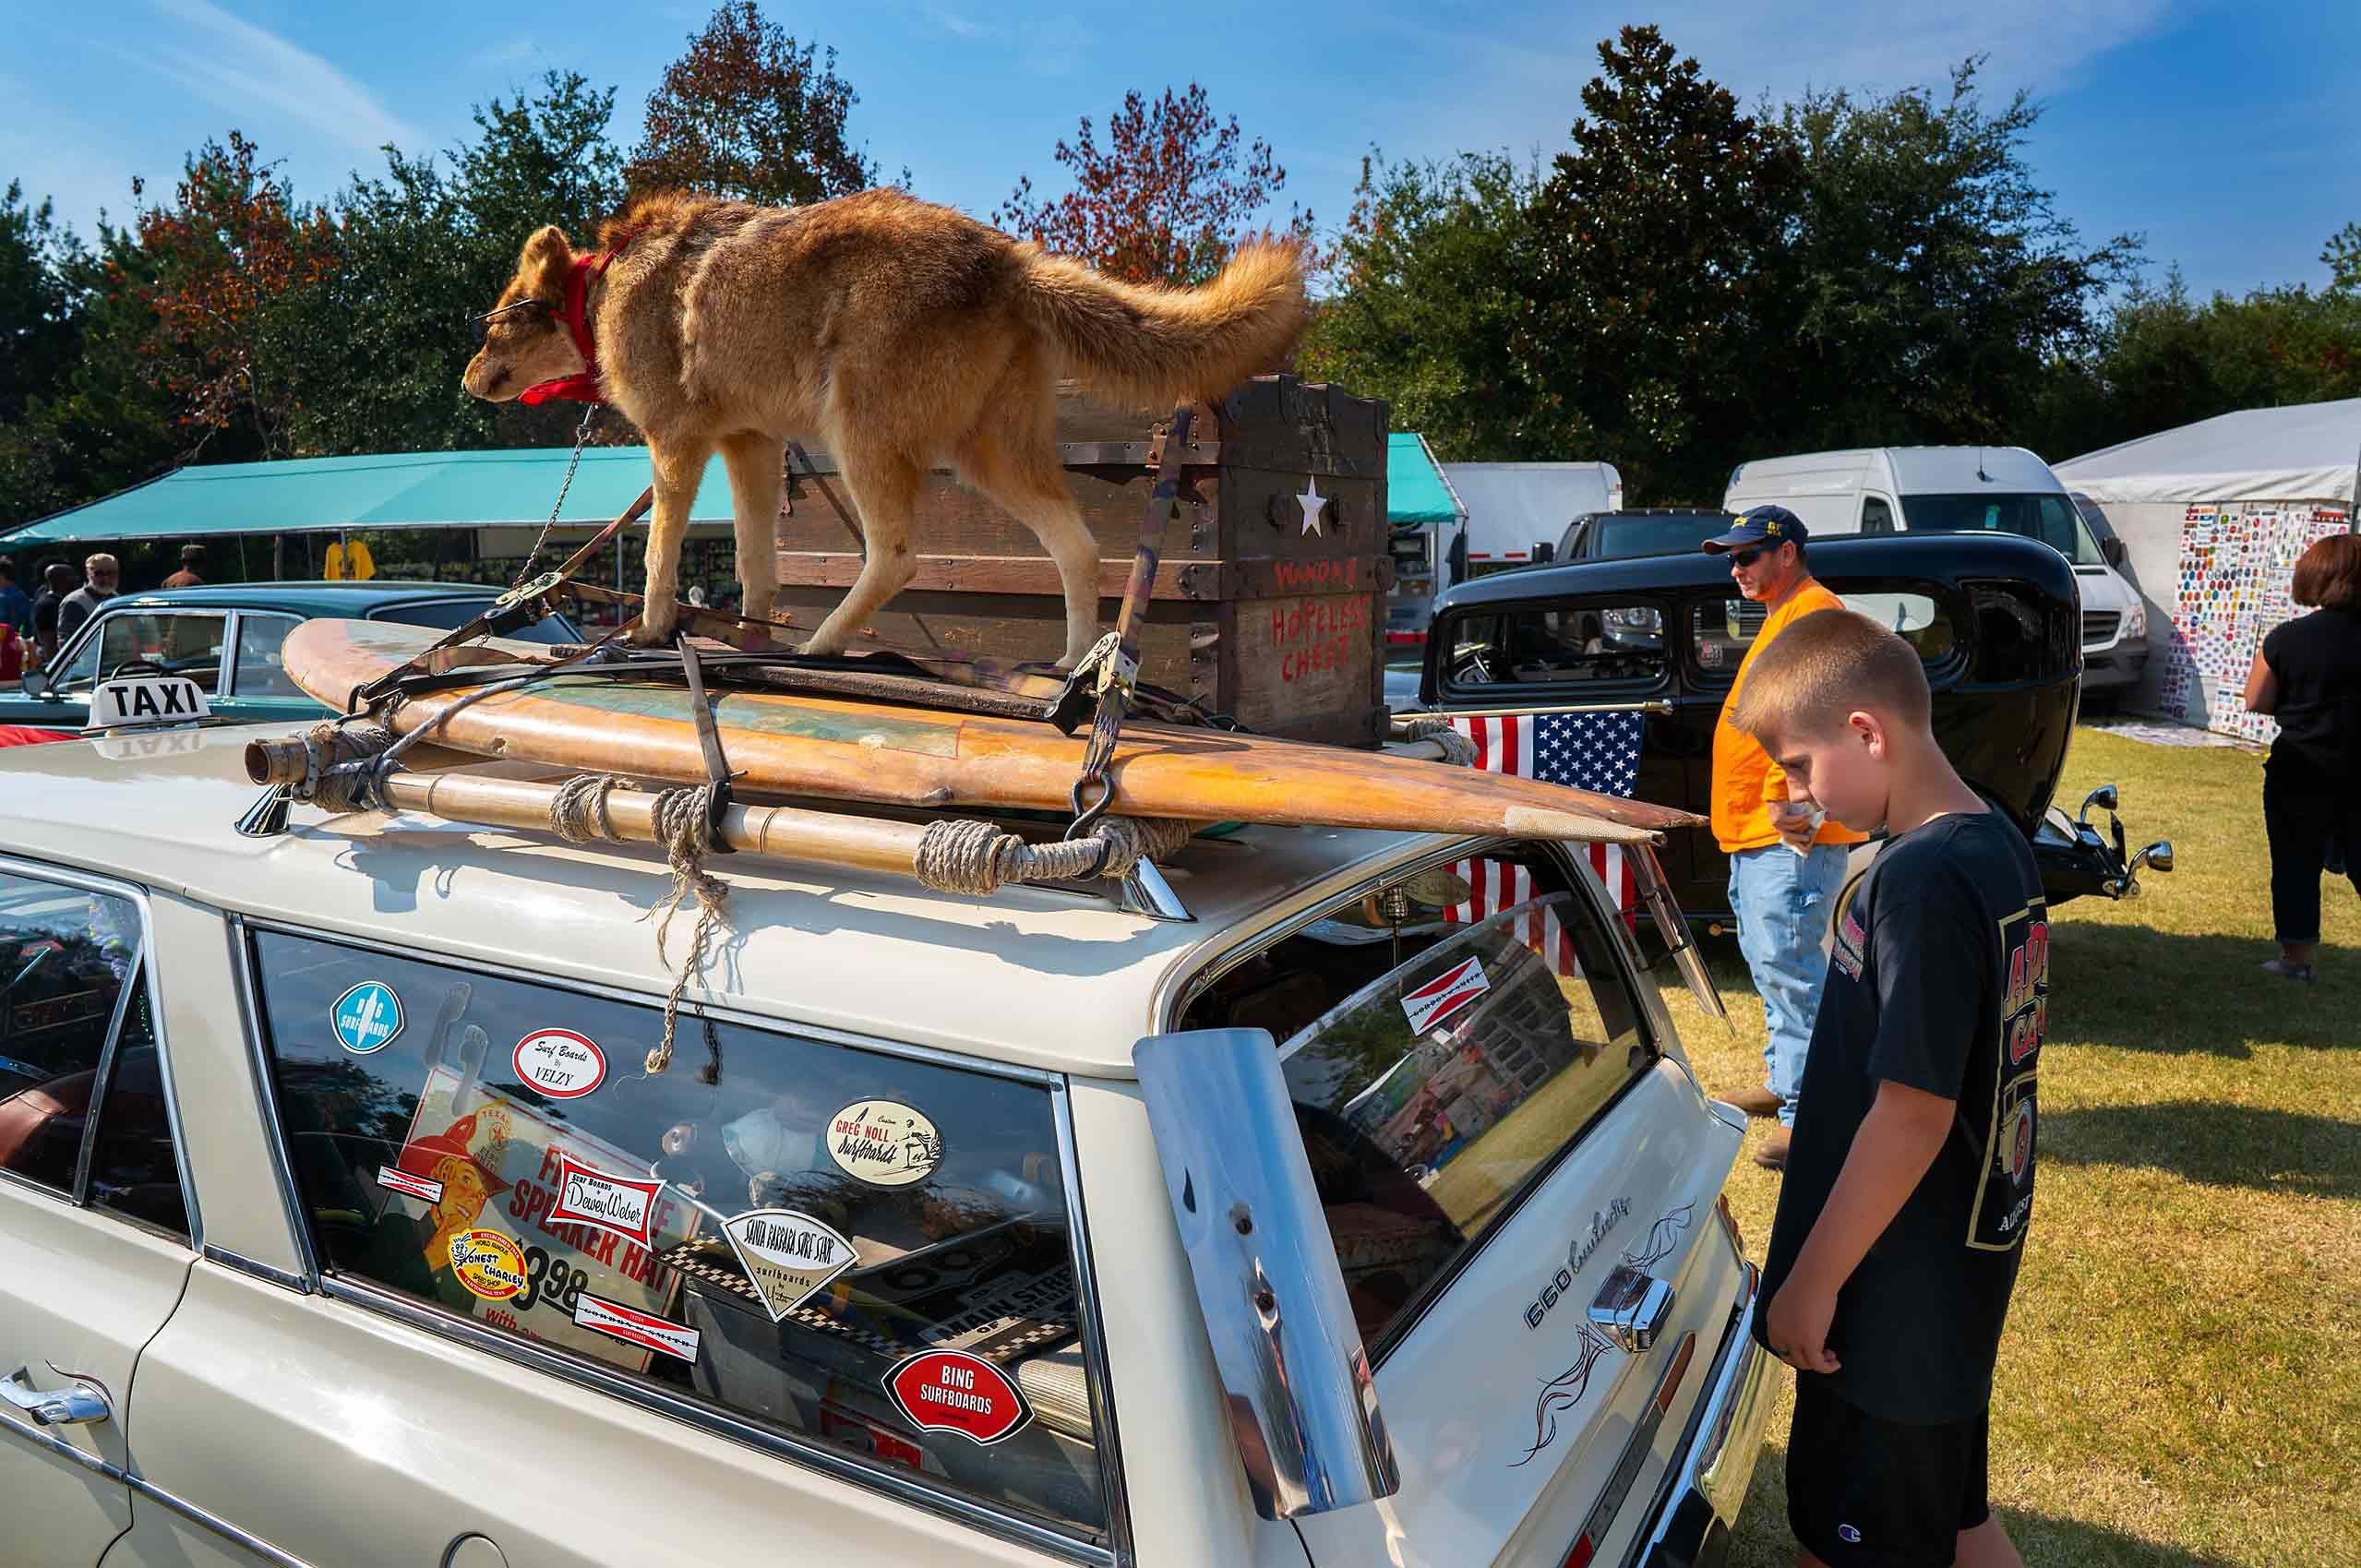 Kid at car show hot rod stuffed dog surf board 